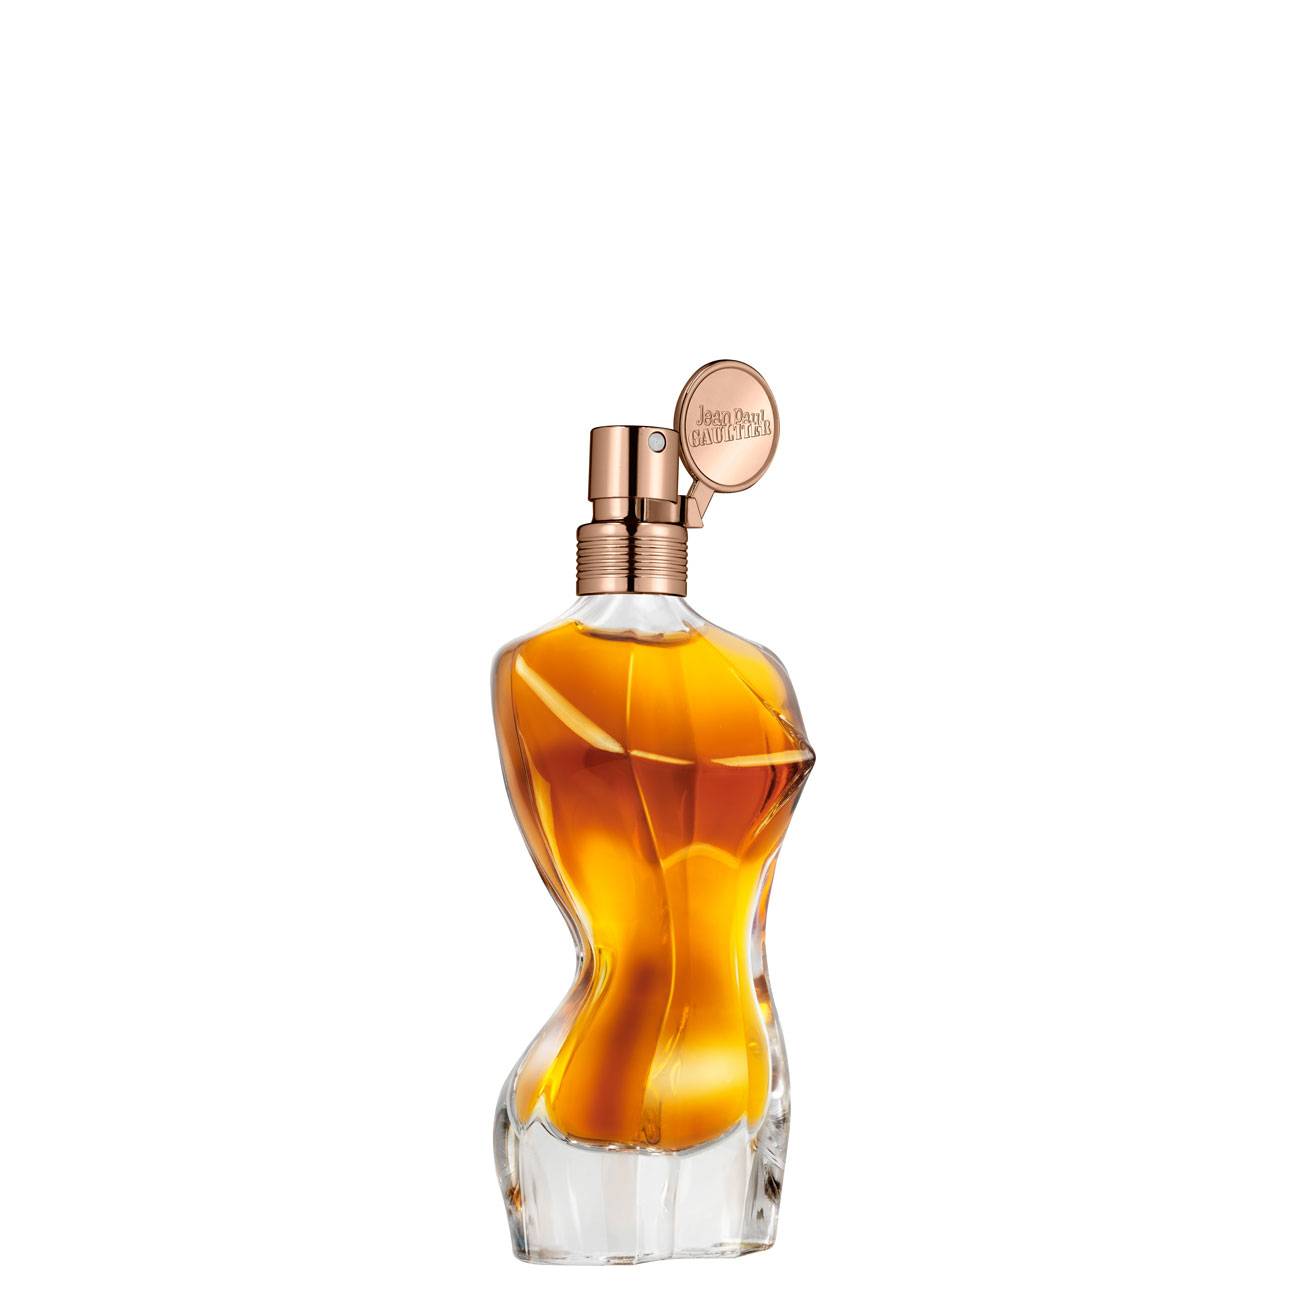 Apa de Parfum Jean Paul Gaultier CLASSIQUE ESSENCE 50ml cu comanda online